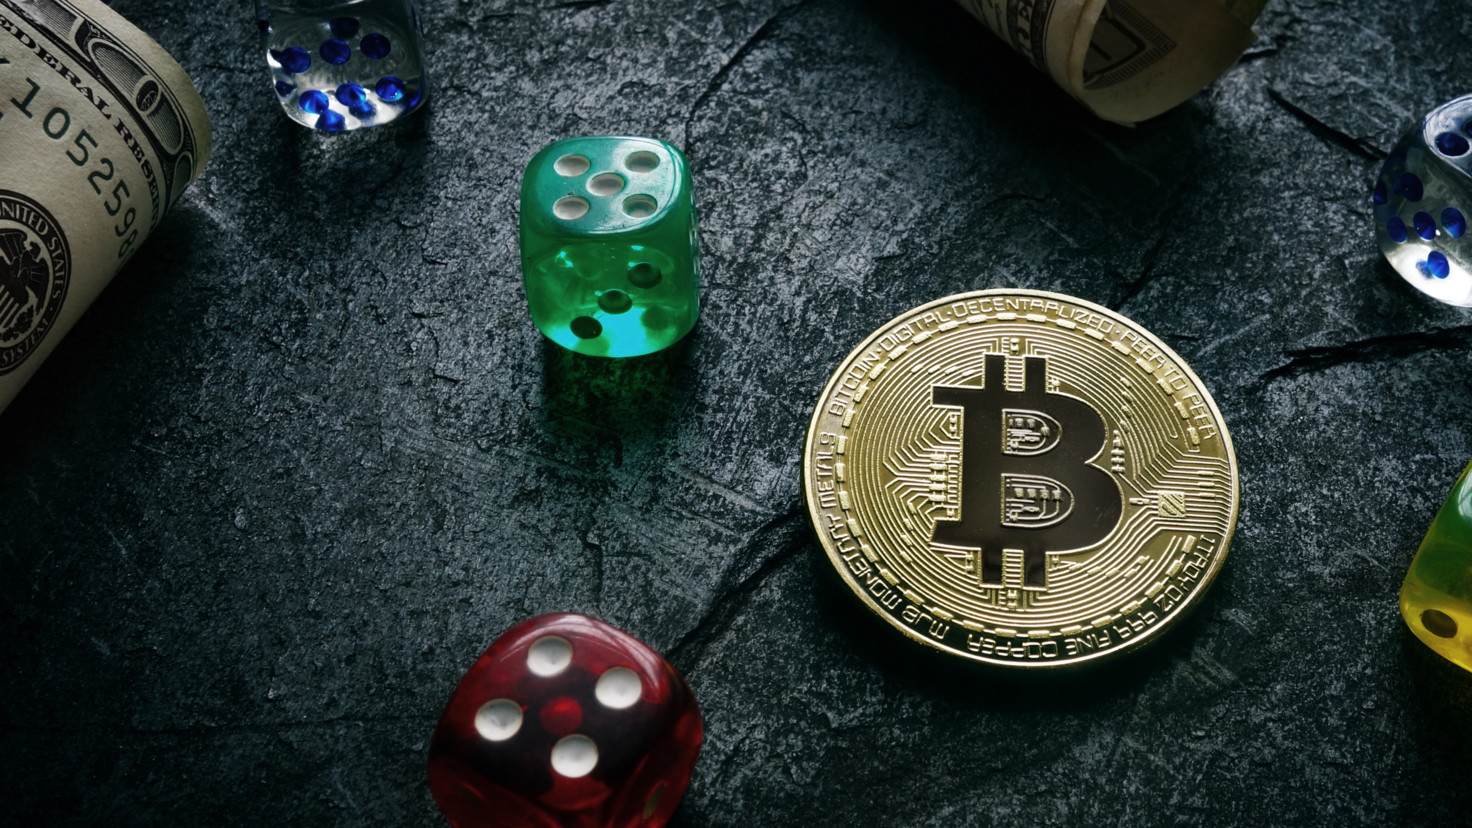 High volatile crypto coins buying bitcoin with kraken